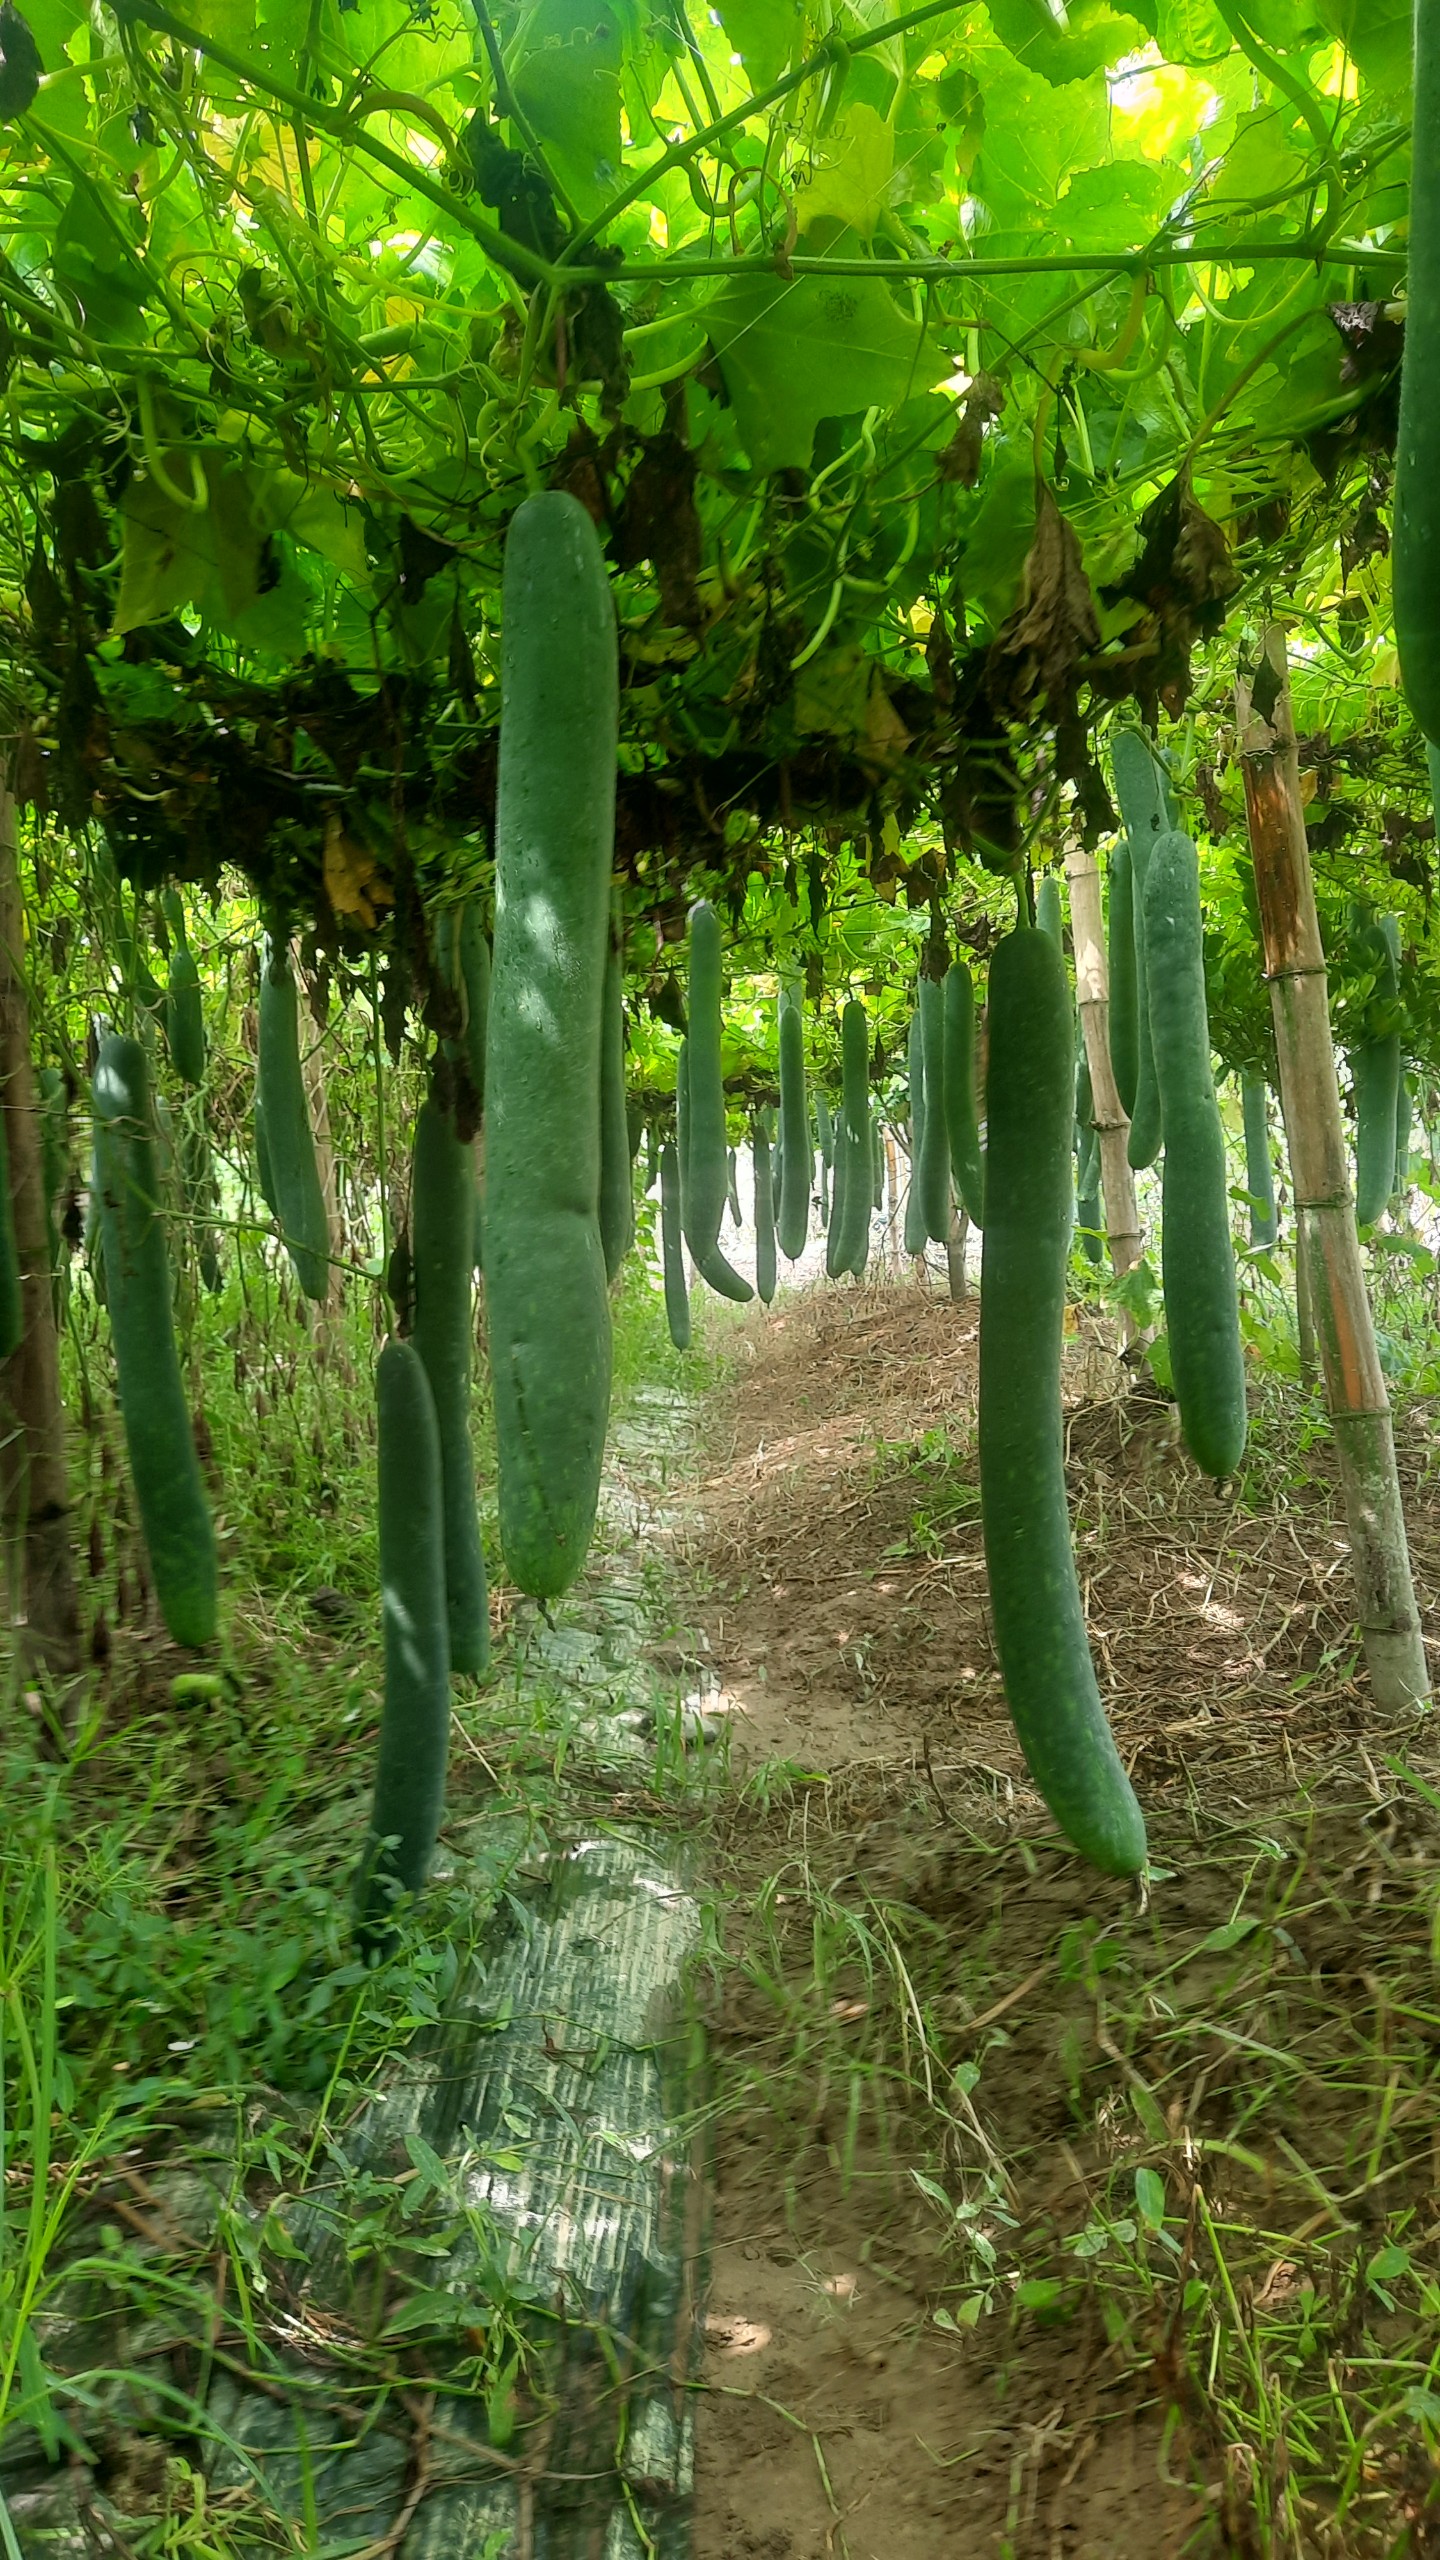 Mô hình cải tạo vườn tạp chuyển đổi số trồng bí xanh của đoàn viên Nguyễn Văn Tuyên thôn Vĩnh Sơn